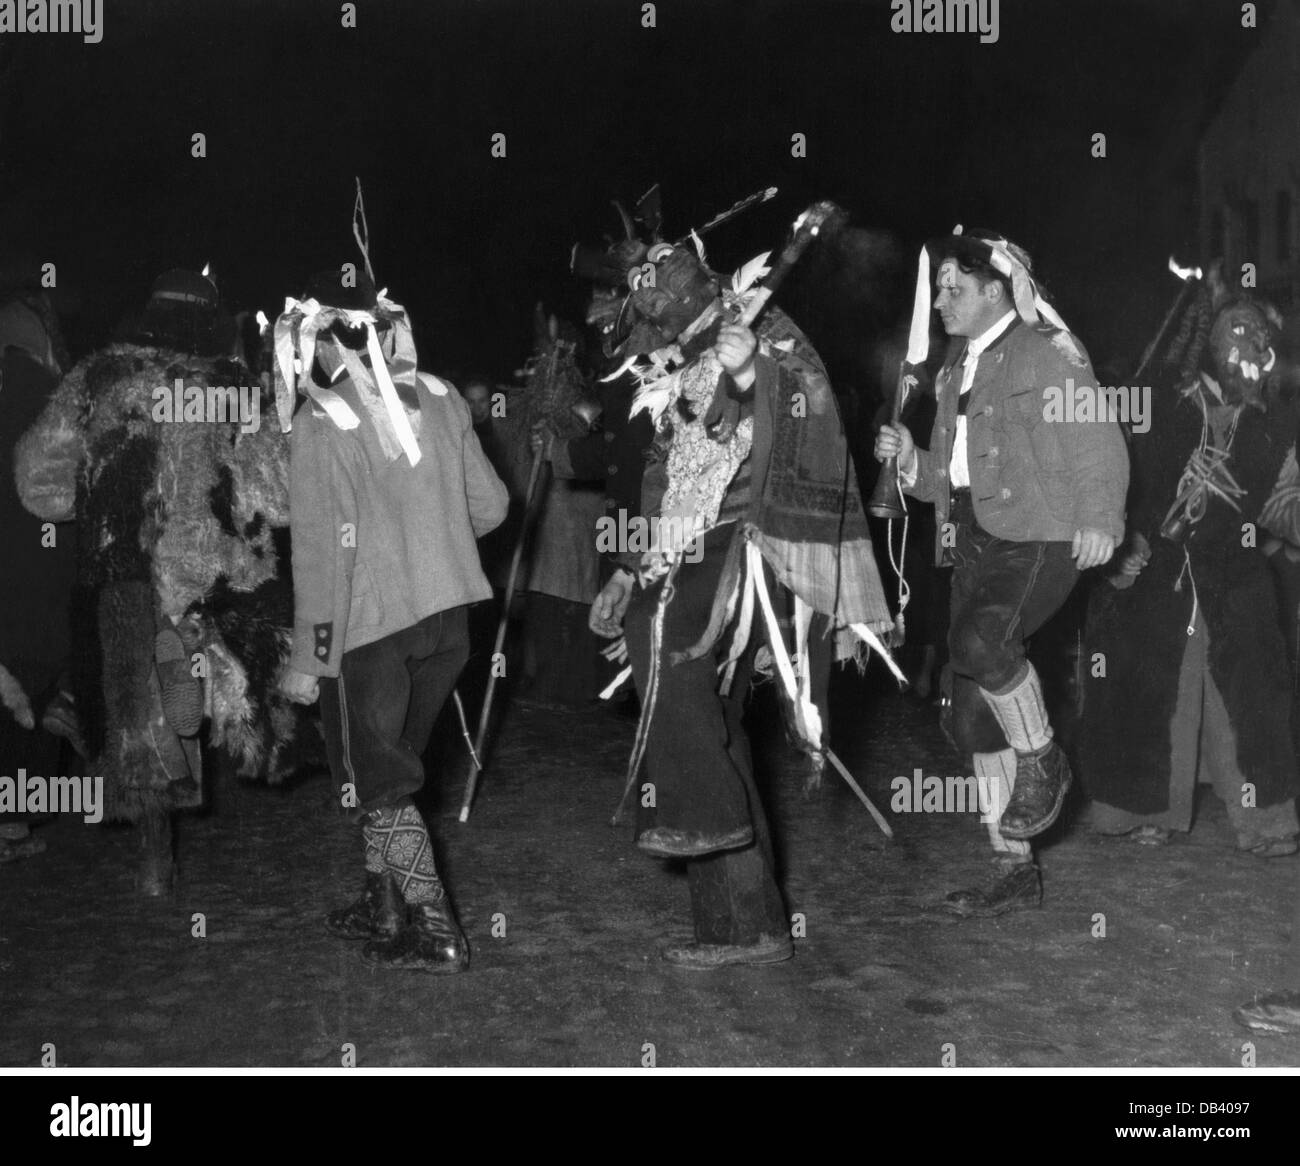 Feste, Perchtenlaufen, Perchten con e senza maschere di legno che eseguono la danza tradizionale, Kirchseeon, 1954, Additional-Rights-Clearences-non disponibile Foto Stock